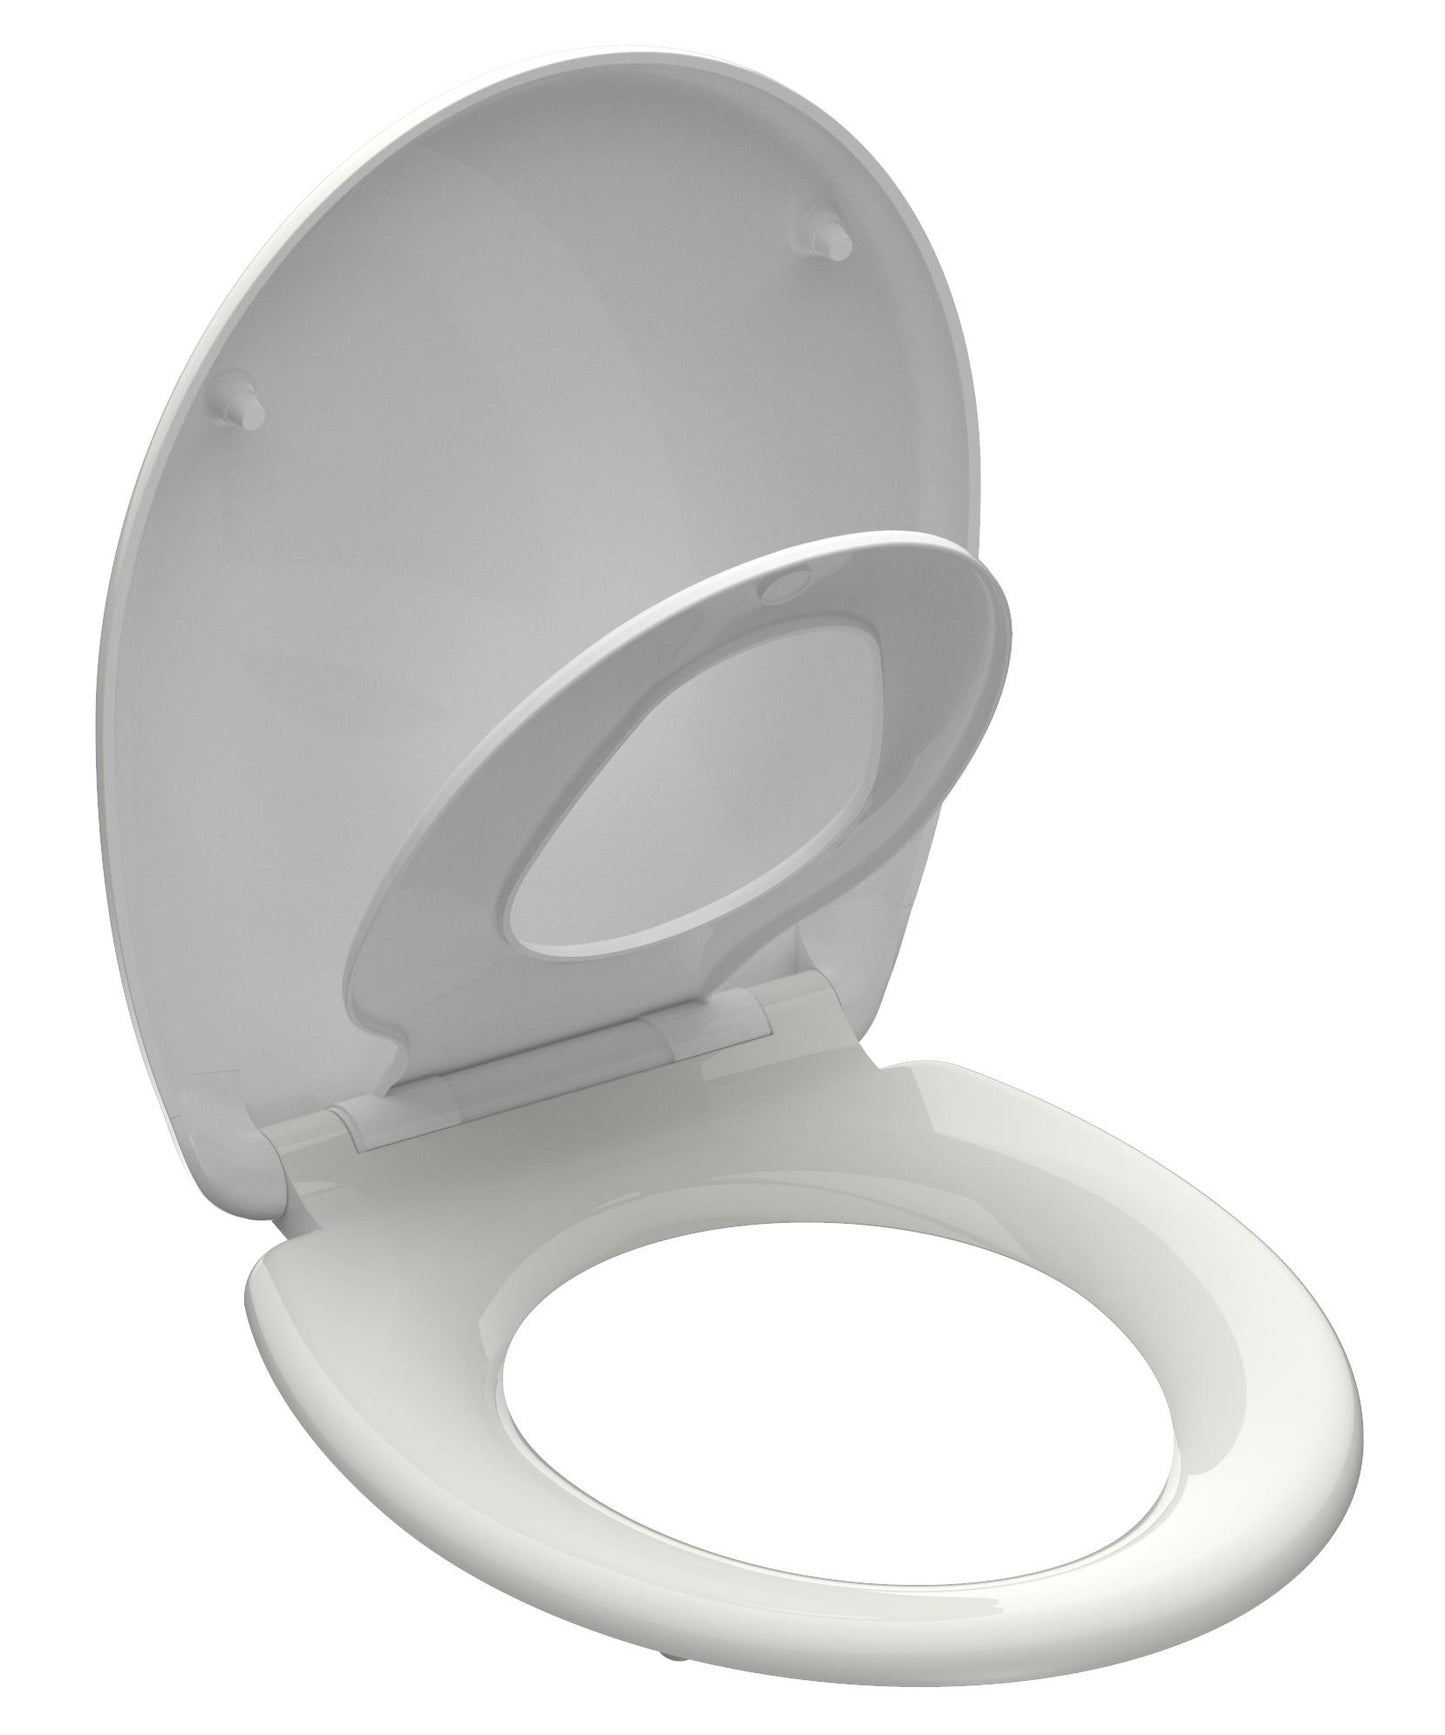 Vit toalettsits universal anpassad för barn - BÄST. CC-mått: 90-190mm Längd: 451mm Bredd: 371mm.